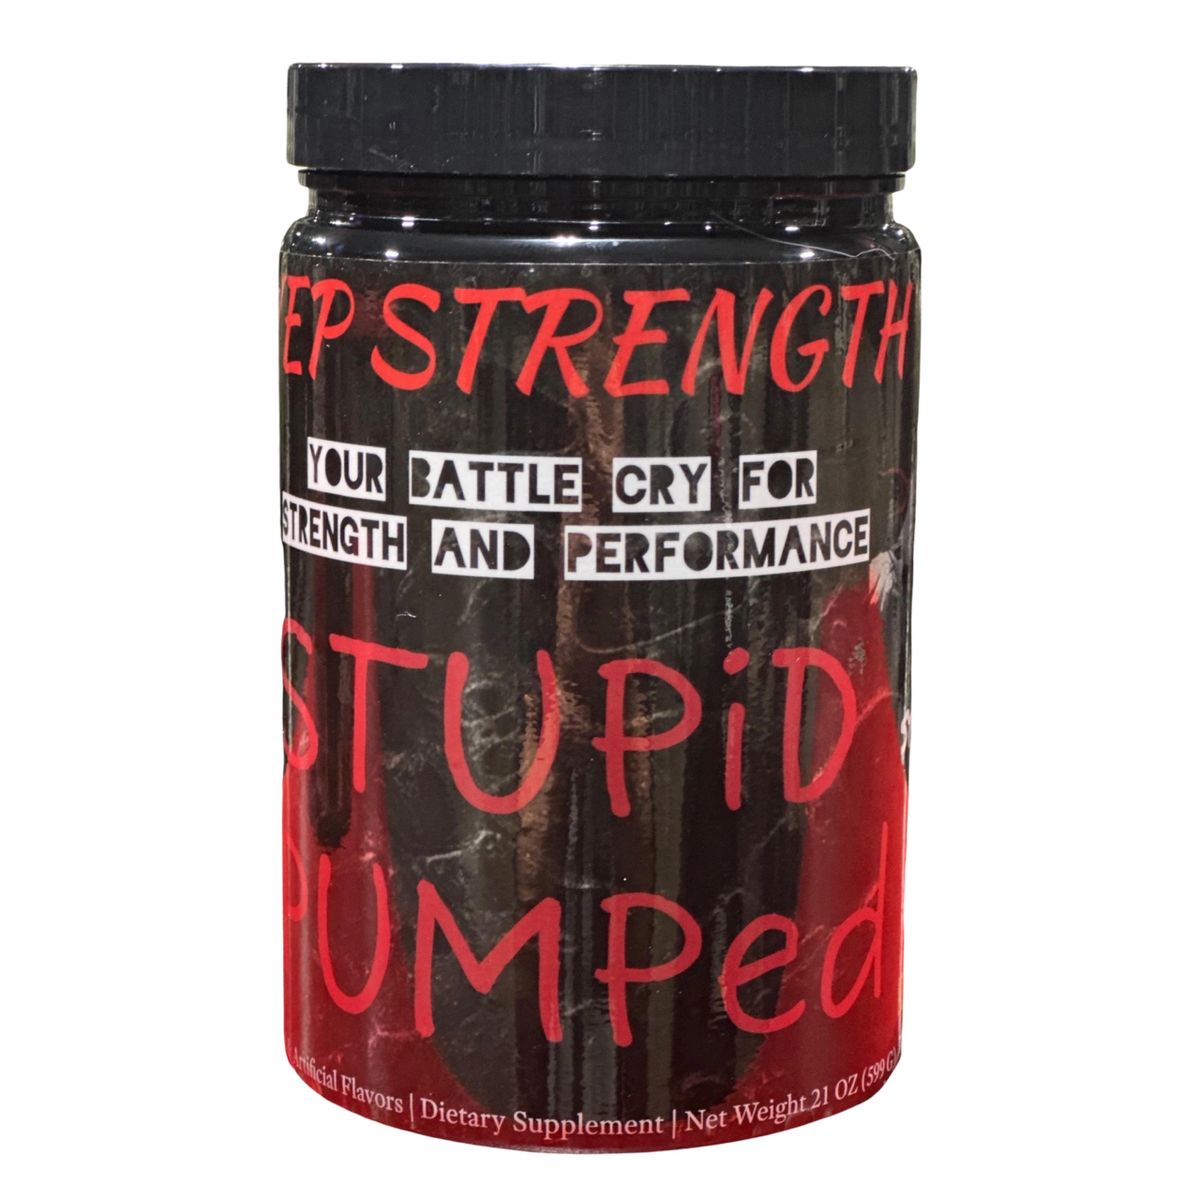 YEP! Strength | STUPiD PUMPeD